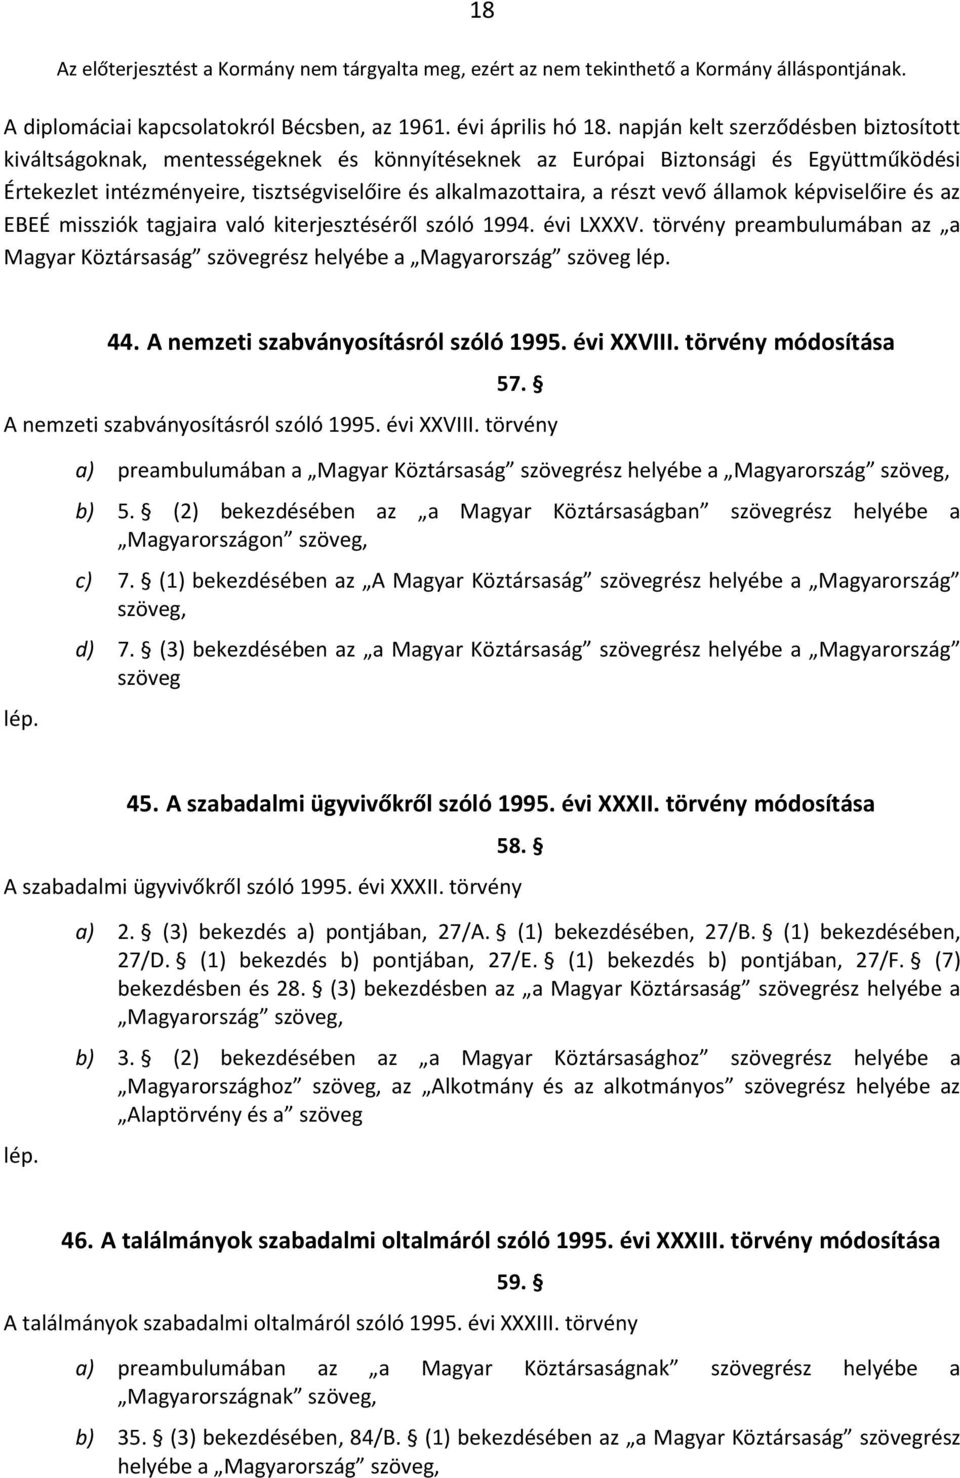 vevő államok képviselőire és az EBEÉ missziók tagjaira való kiterjesztéséről szóló 1994. évi LXXXV. törvény preambulumában az a Magyar Köztársaság szövegrész helyébe a Magyarország szöveg 44.